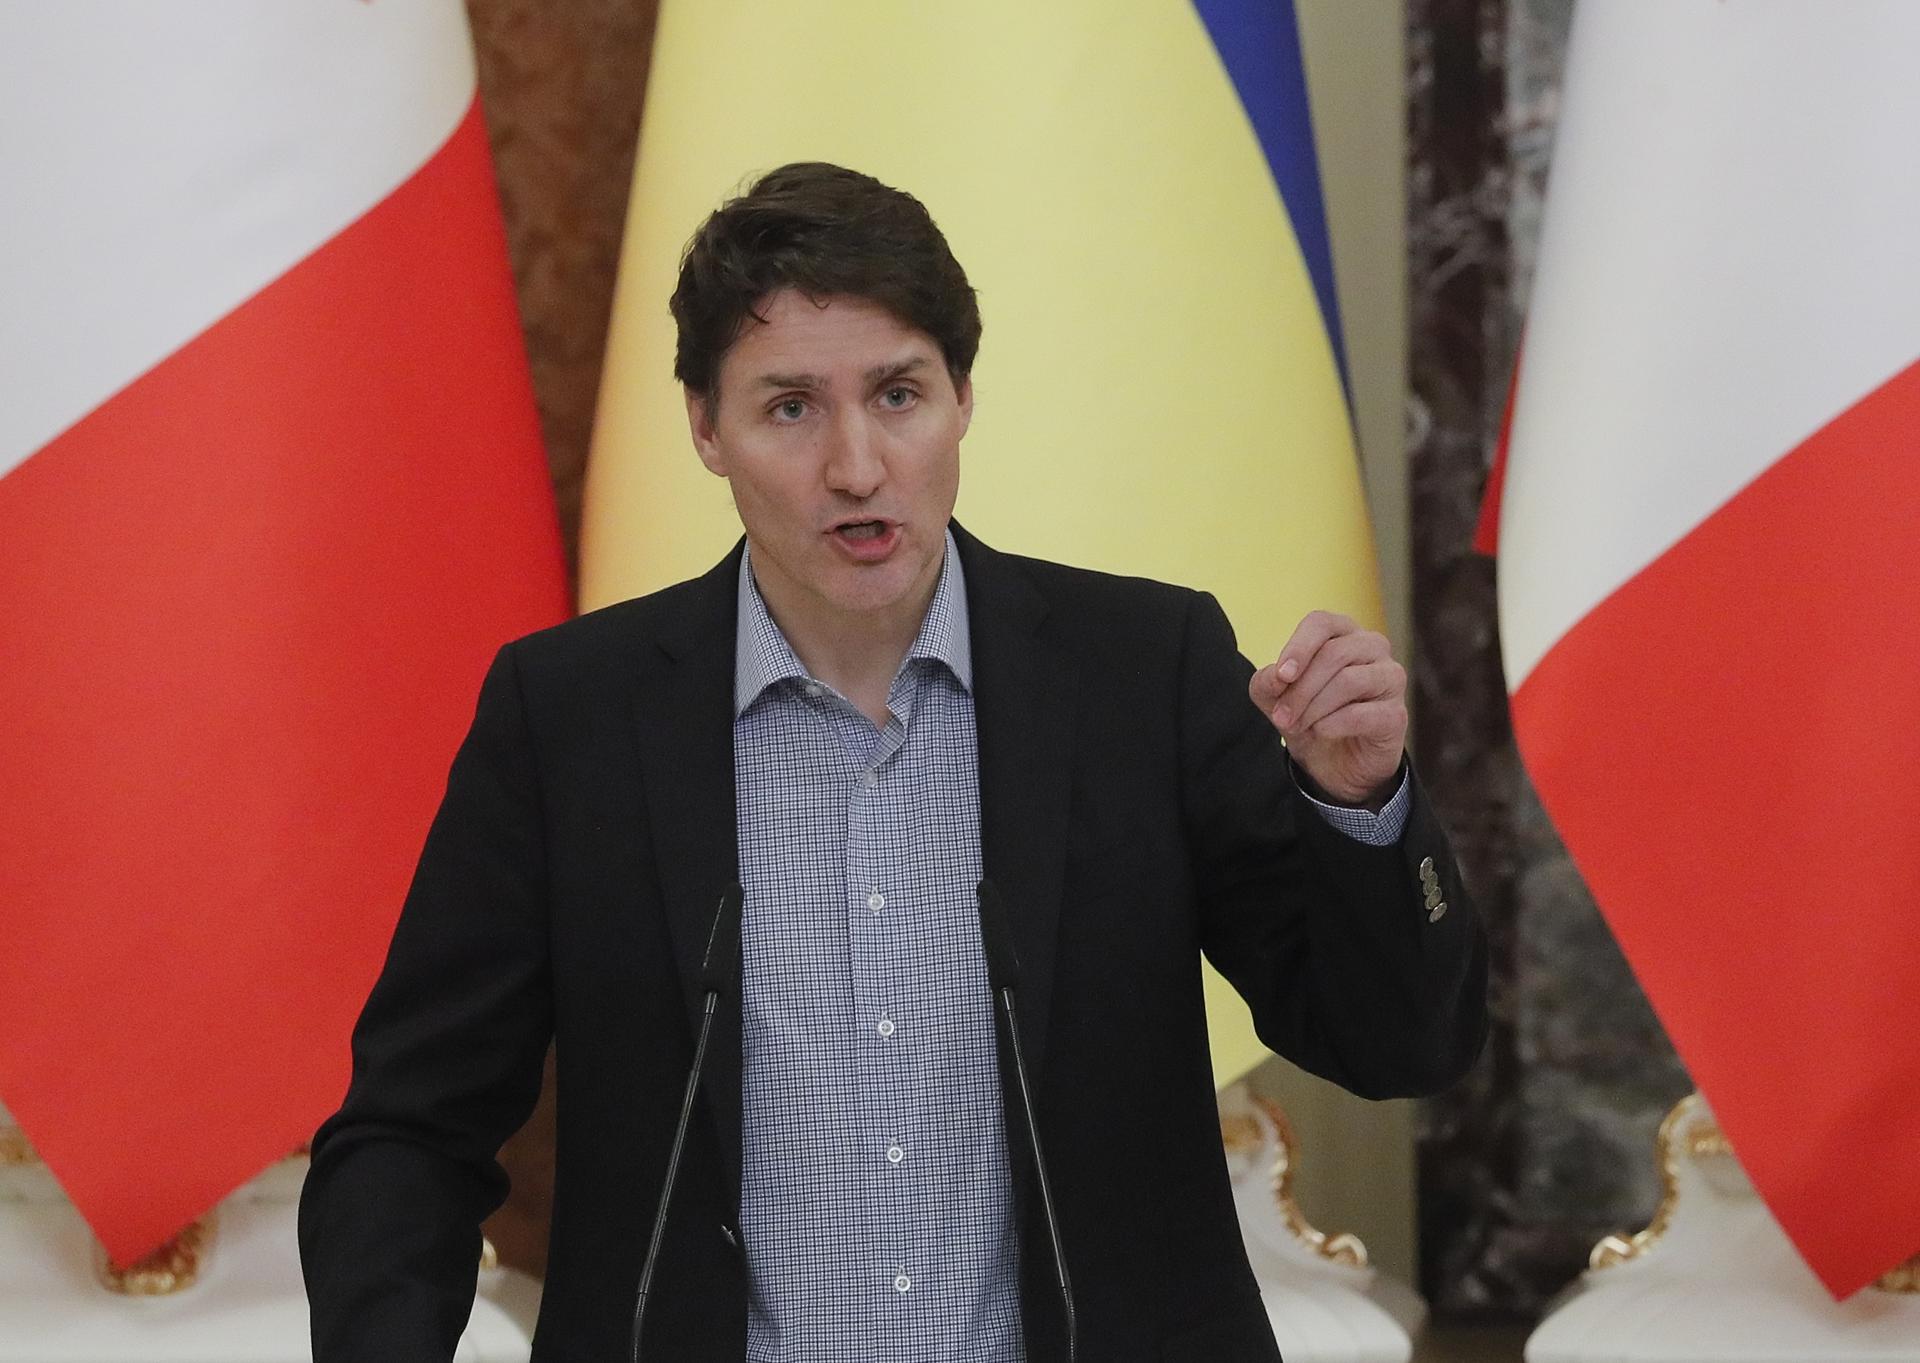 Trudeau admitió que hay un aumento "inaceptable" de islamofobia y antisemitismo en Canadá